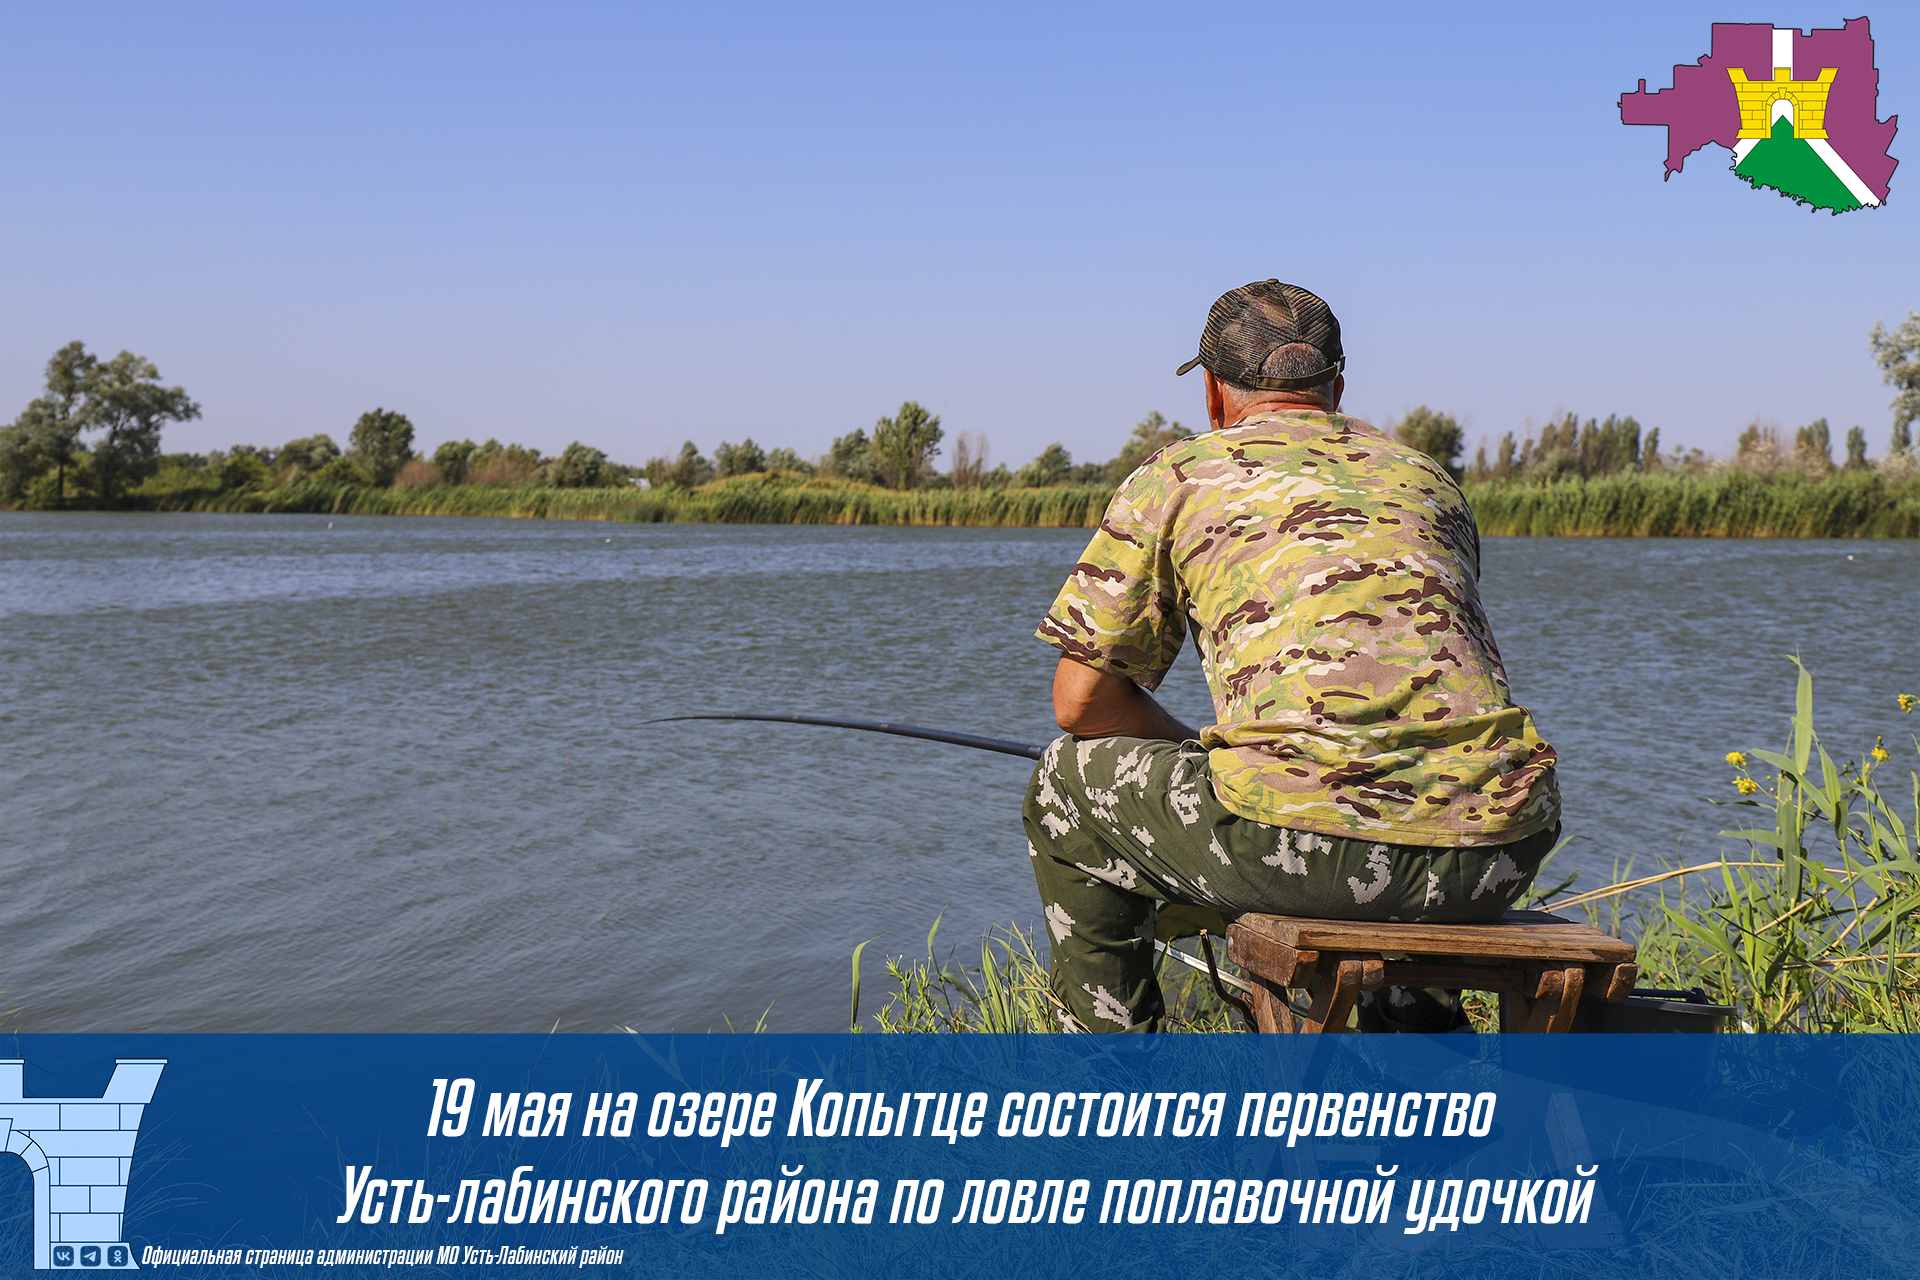  19 мая на озере Копытце состоится первенство Усть-Лабинского района по ловле поплавочной удочкой